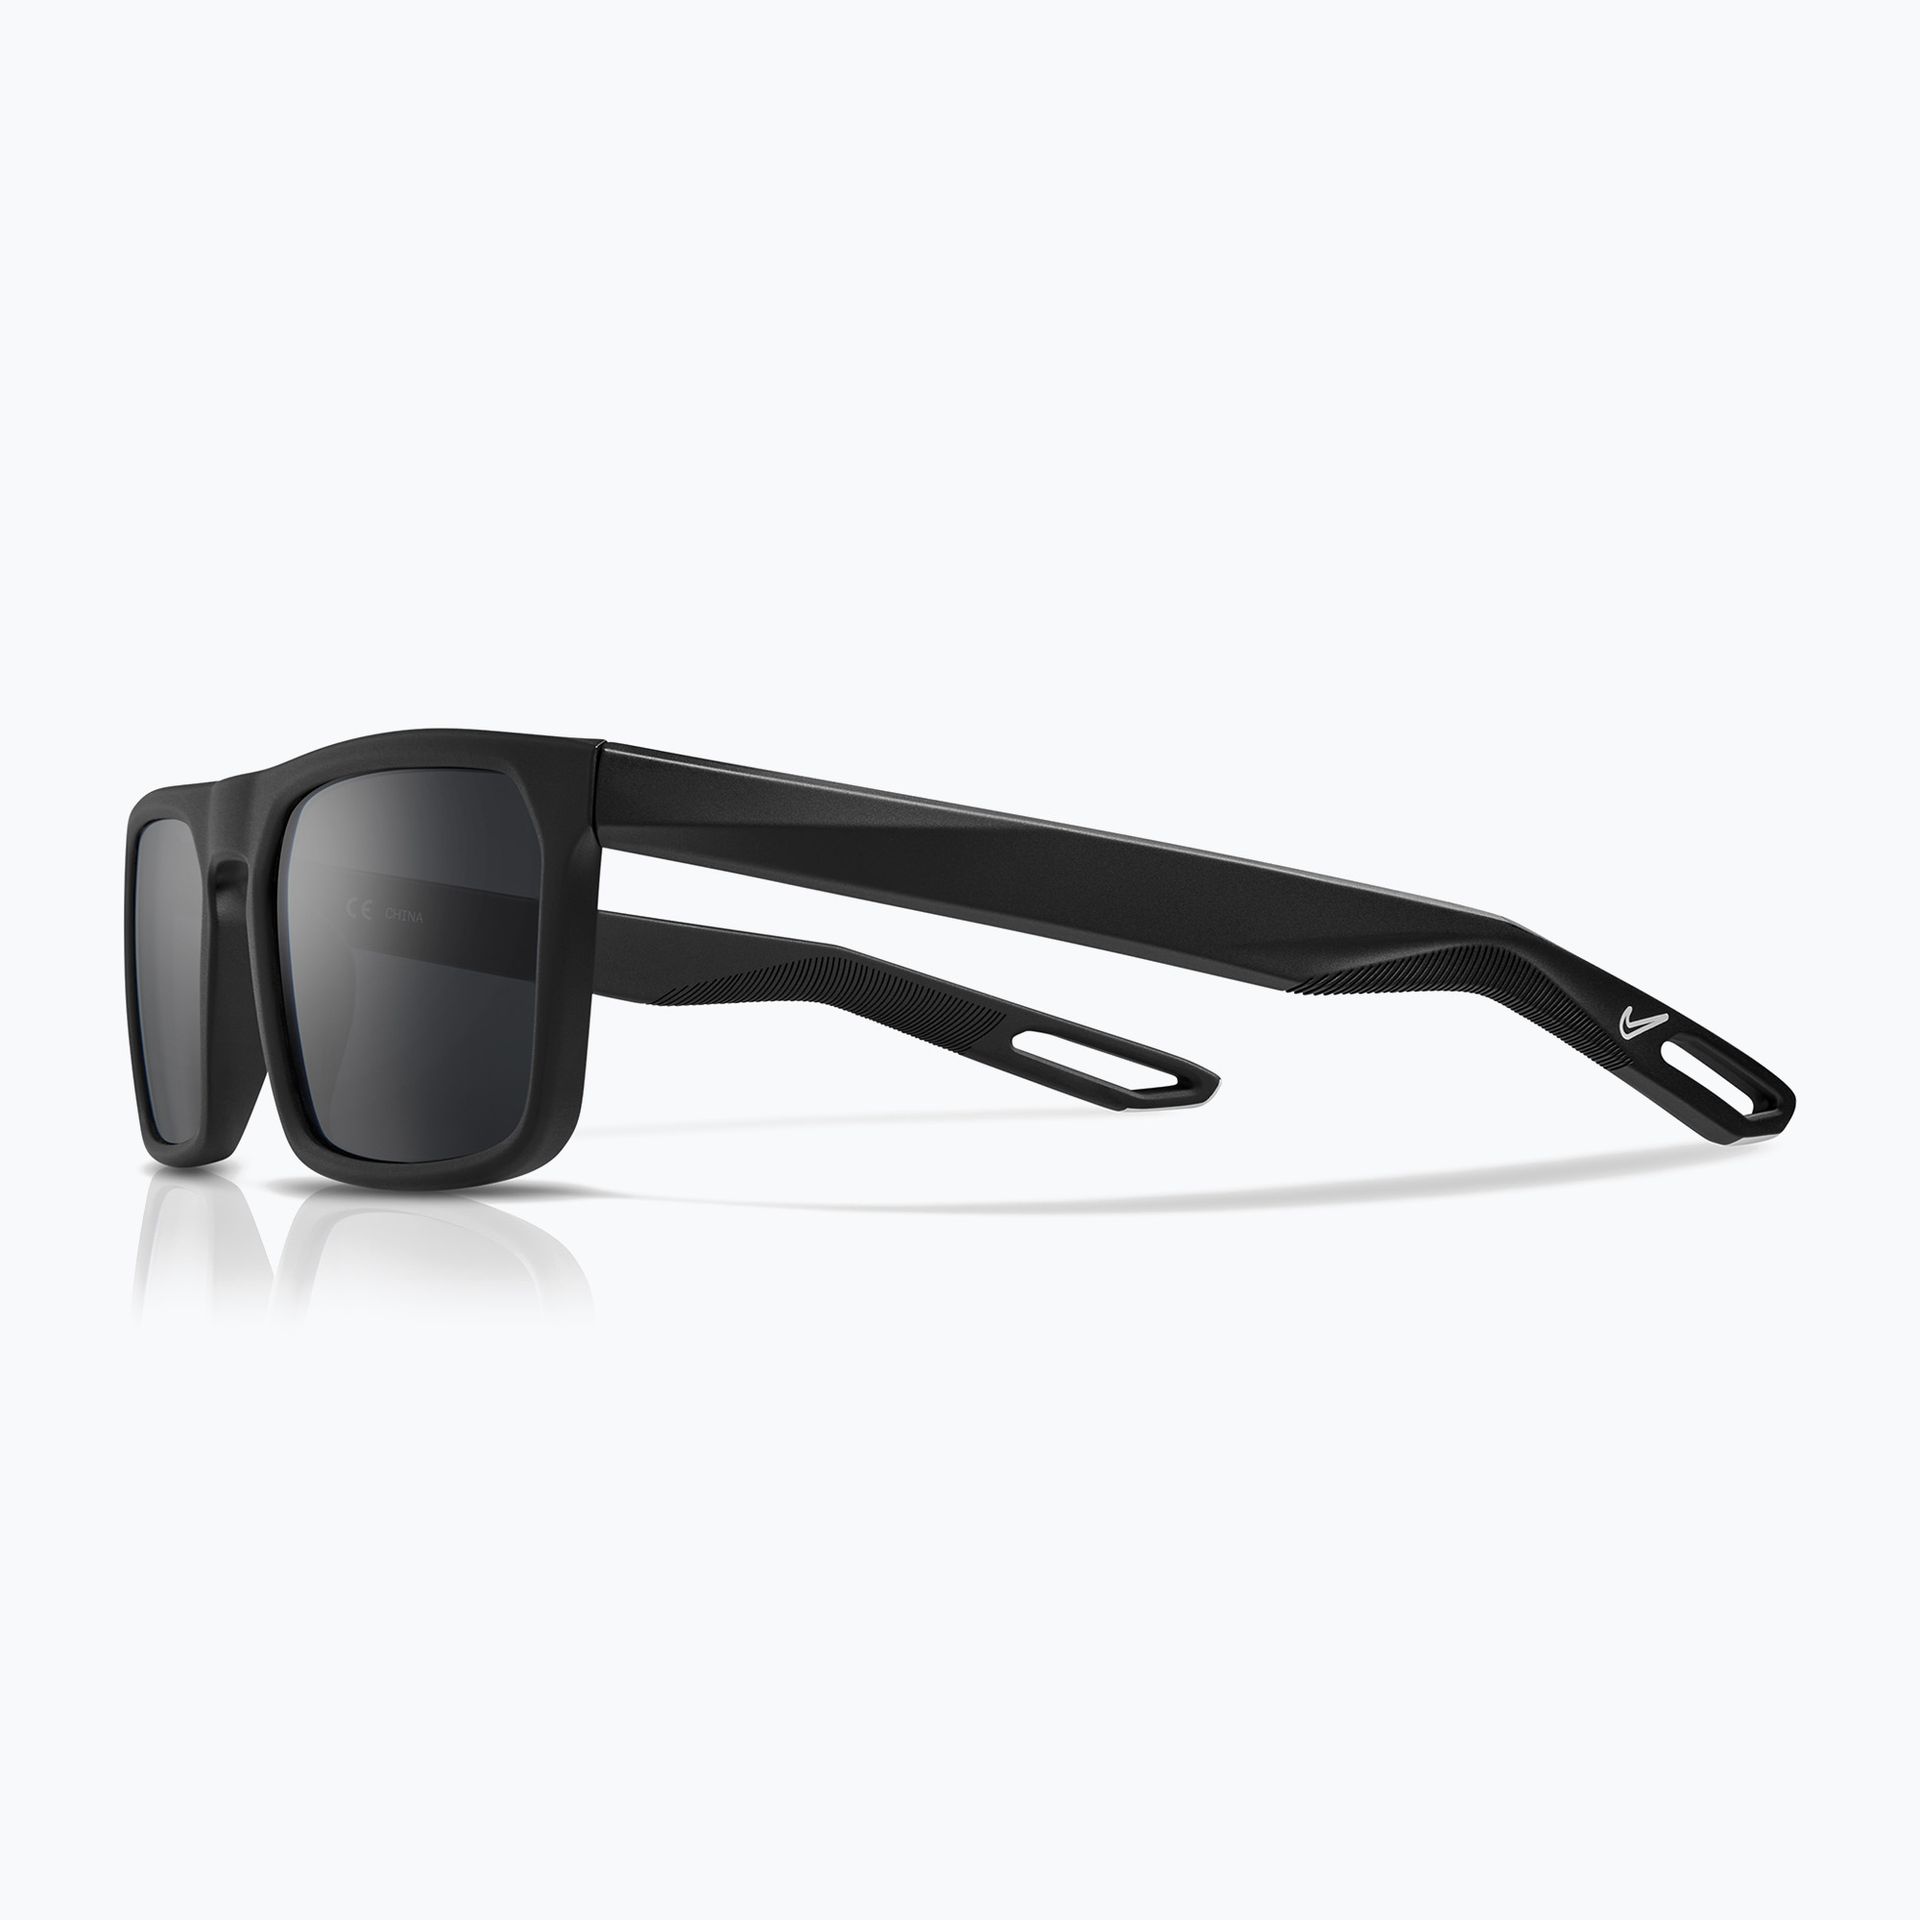 Okulary przeciwsłoneczne Nike NV03 matte black/dark grey | WYSYŁKA W 24H | 30 DNI NA ZWROT